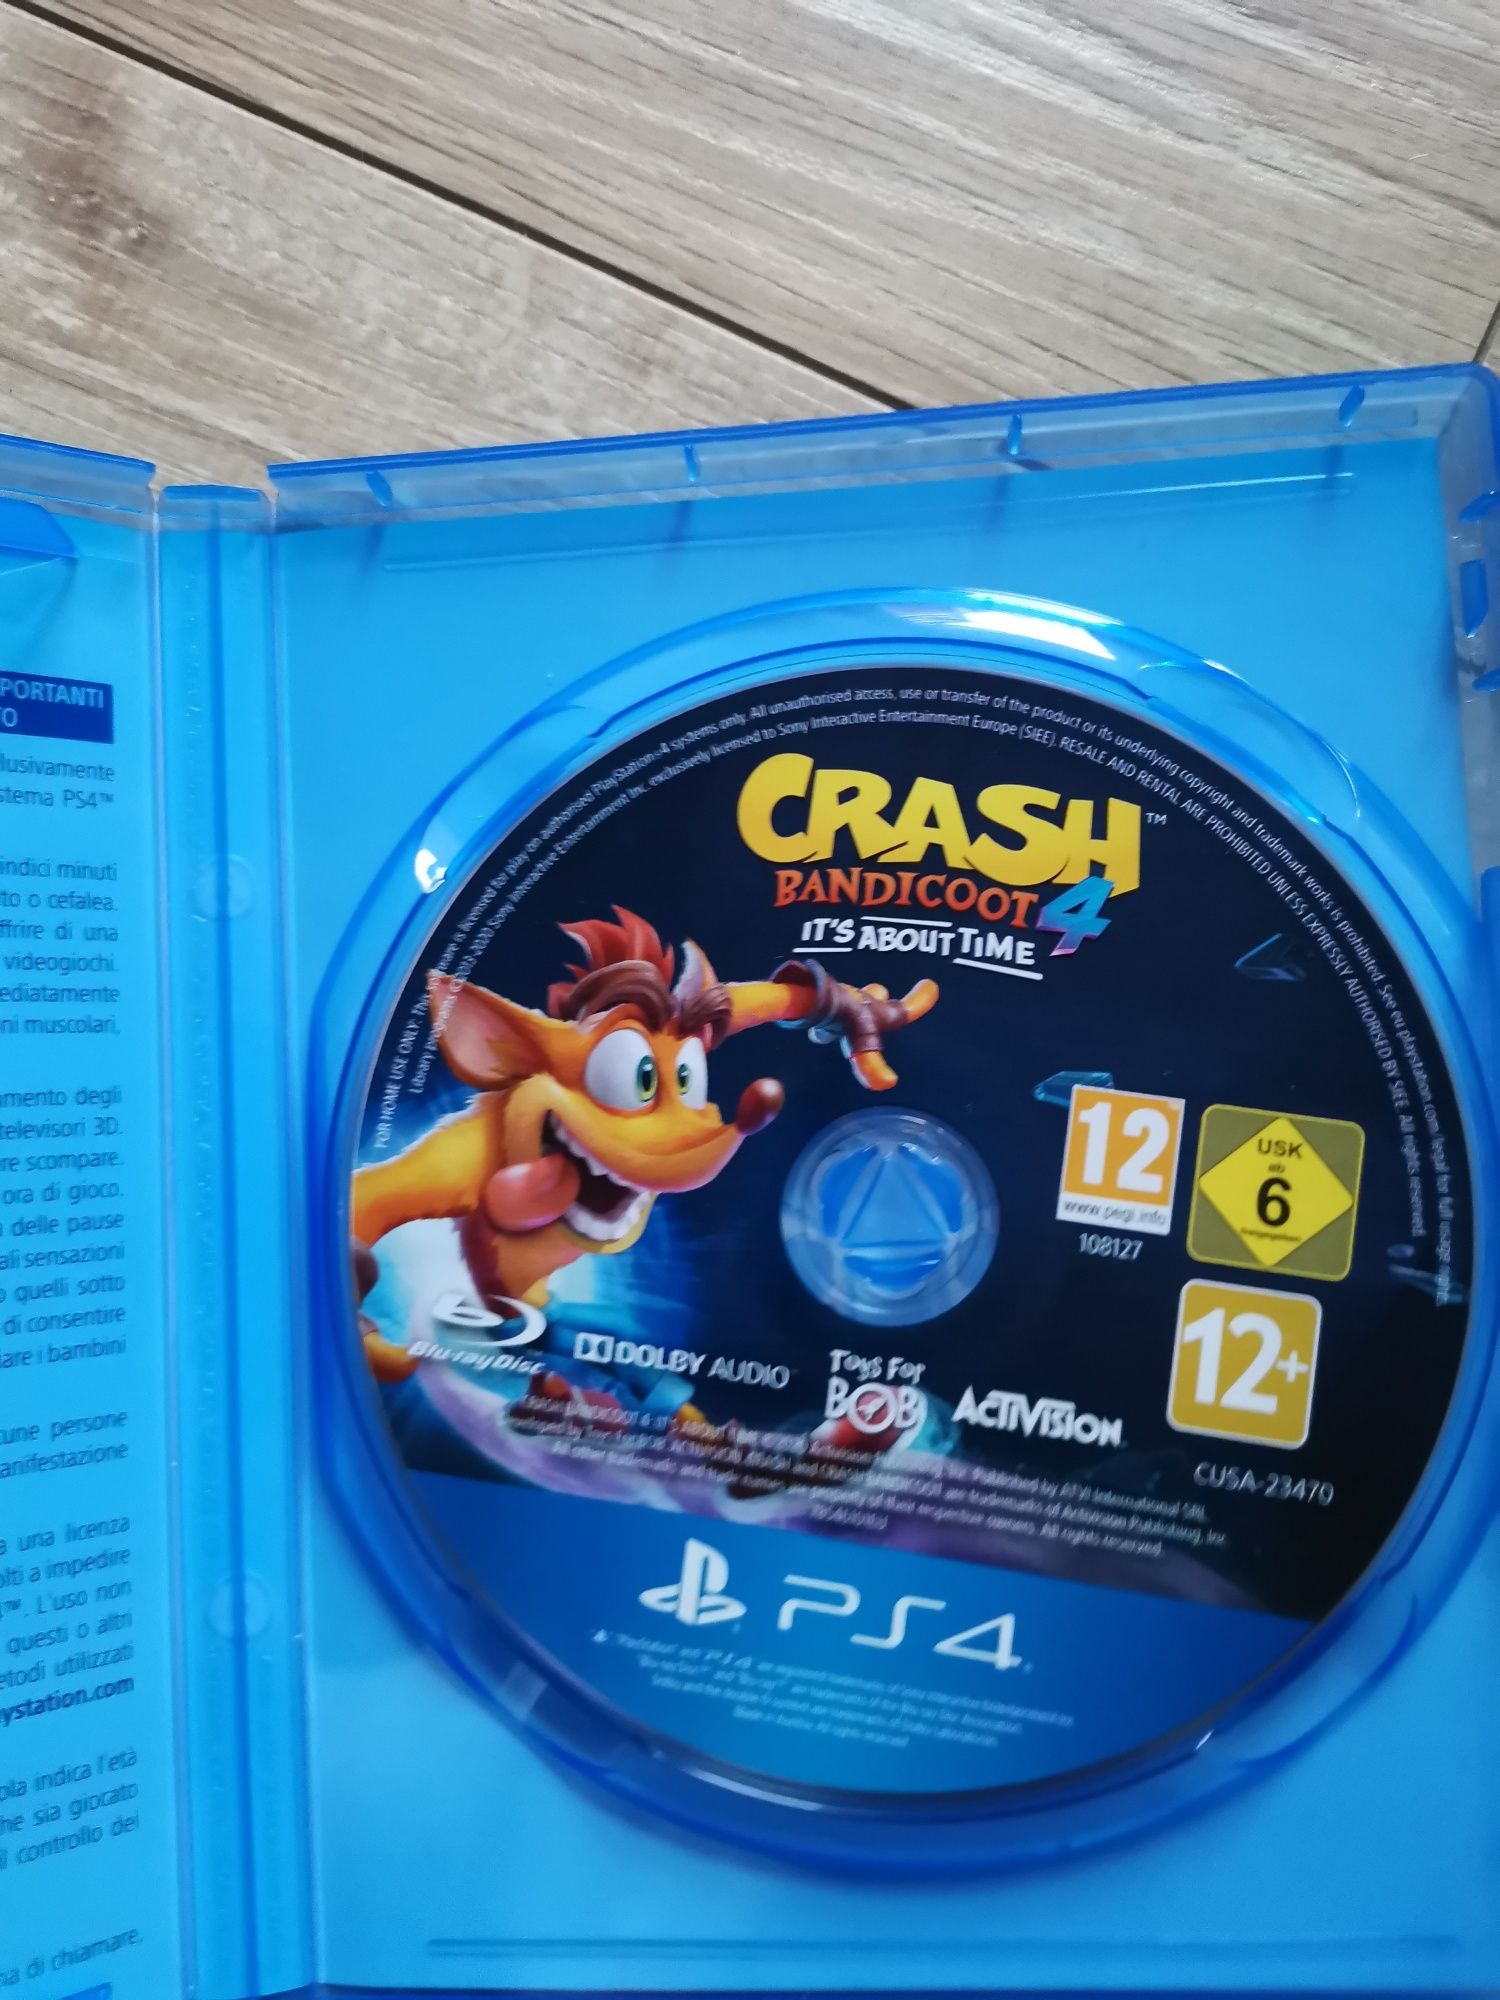 Crash Bandicoot 4 PS4